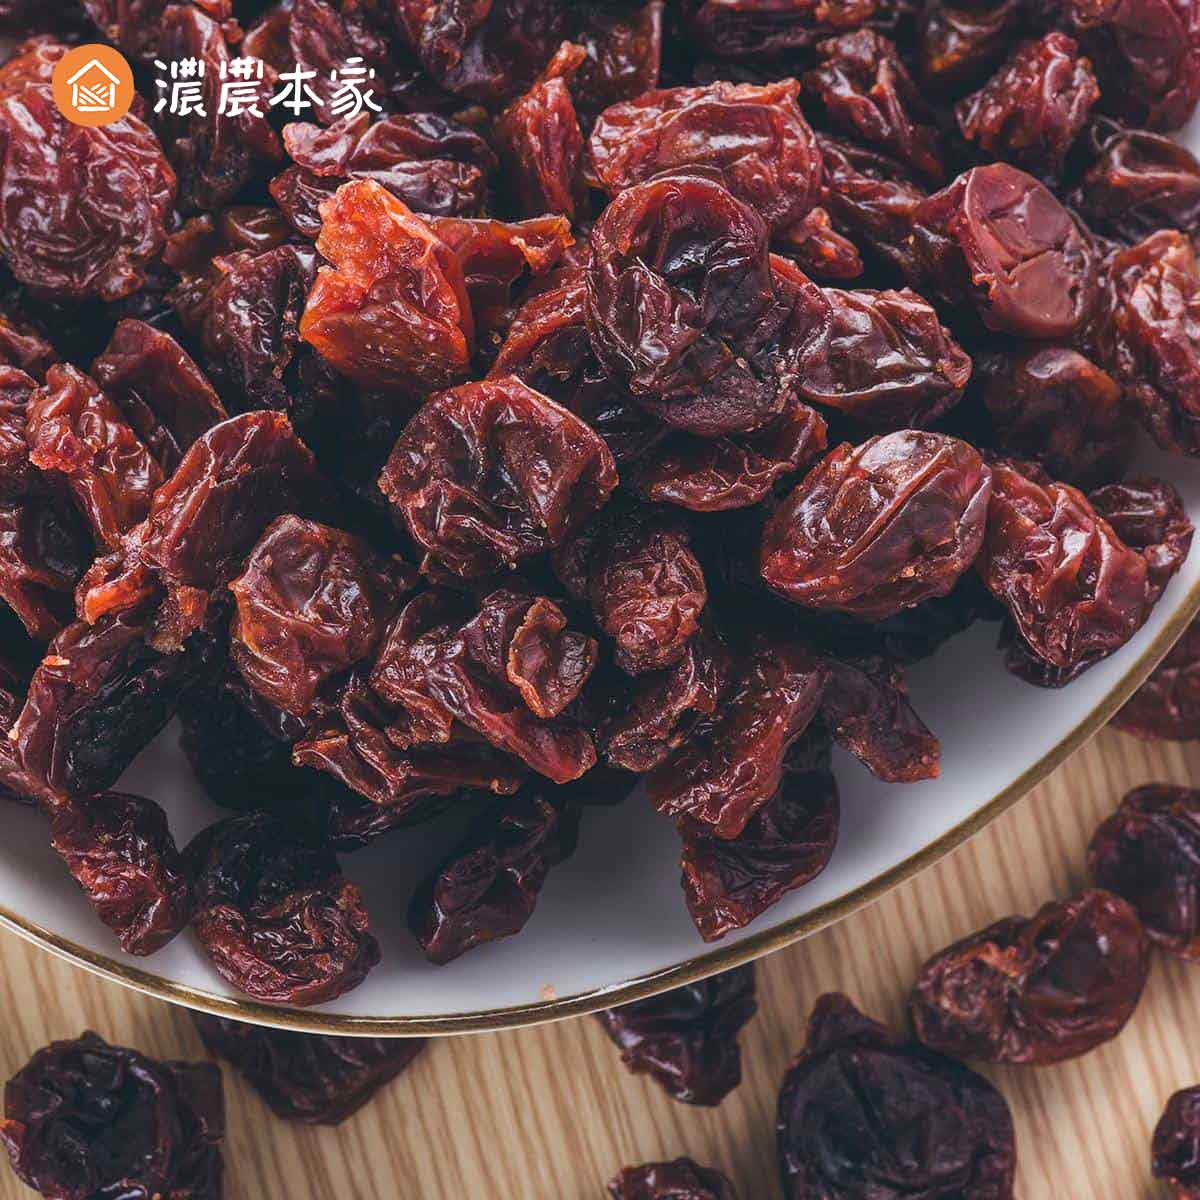 旅遊零食推薦人氣台灣小包裝櫻桃乾